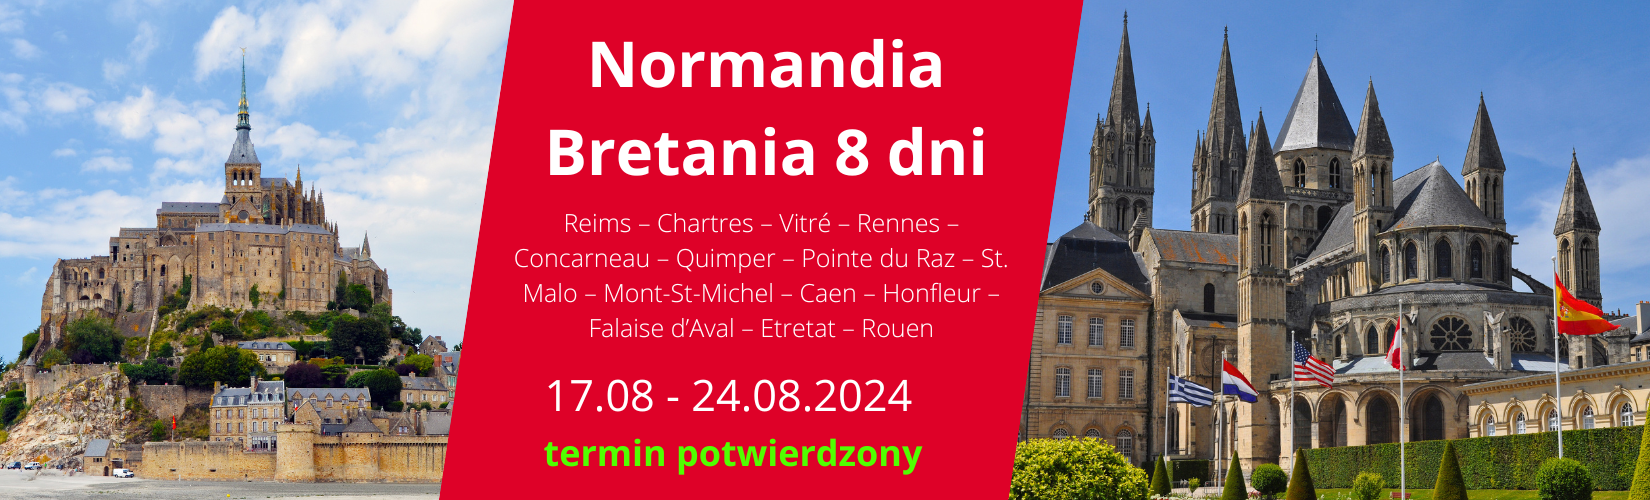 Normandia - Bretania 8 dni